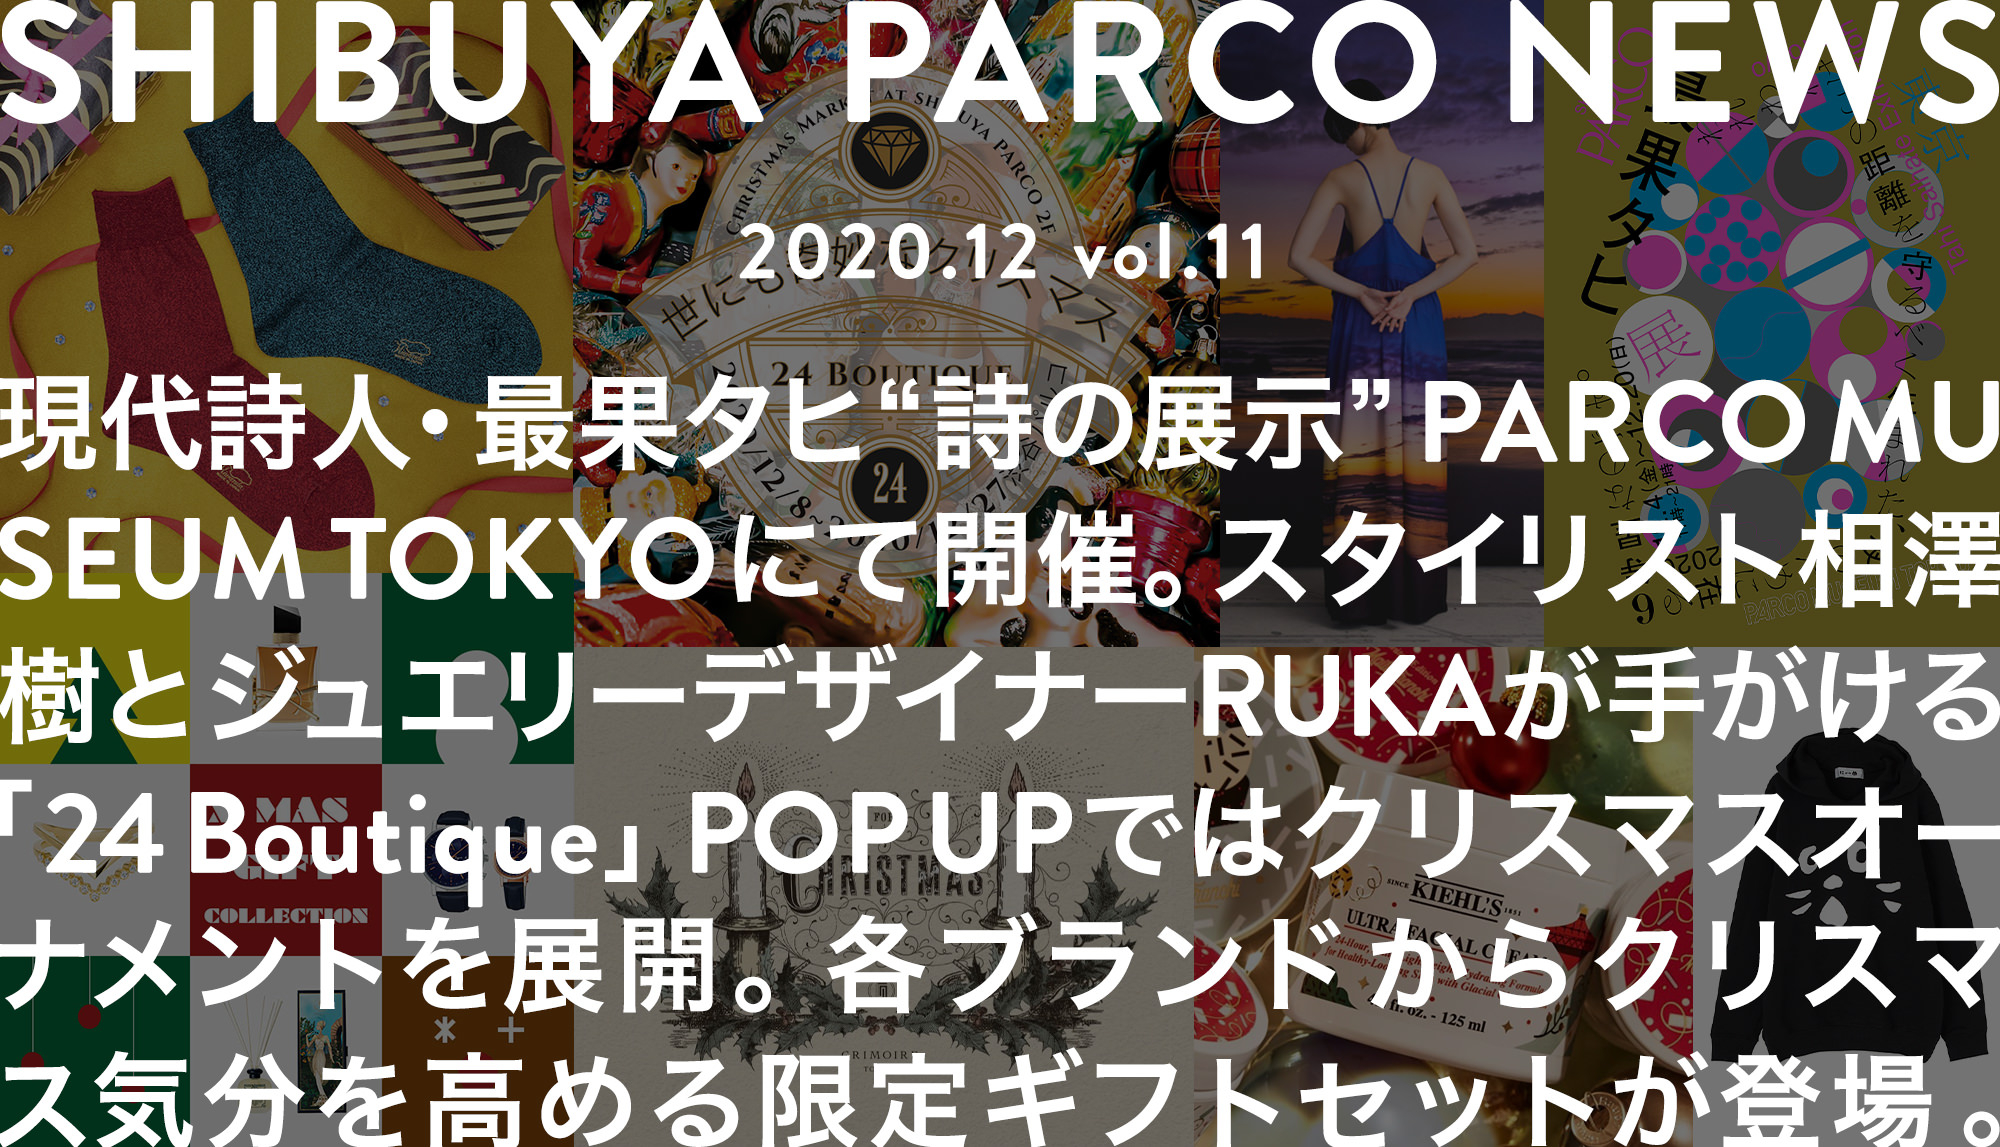 SHIBUYA PARCO NEWS ―2020.12― vol.11